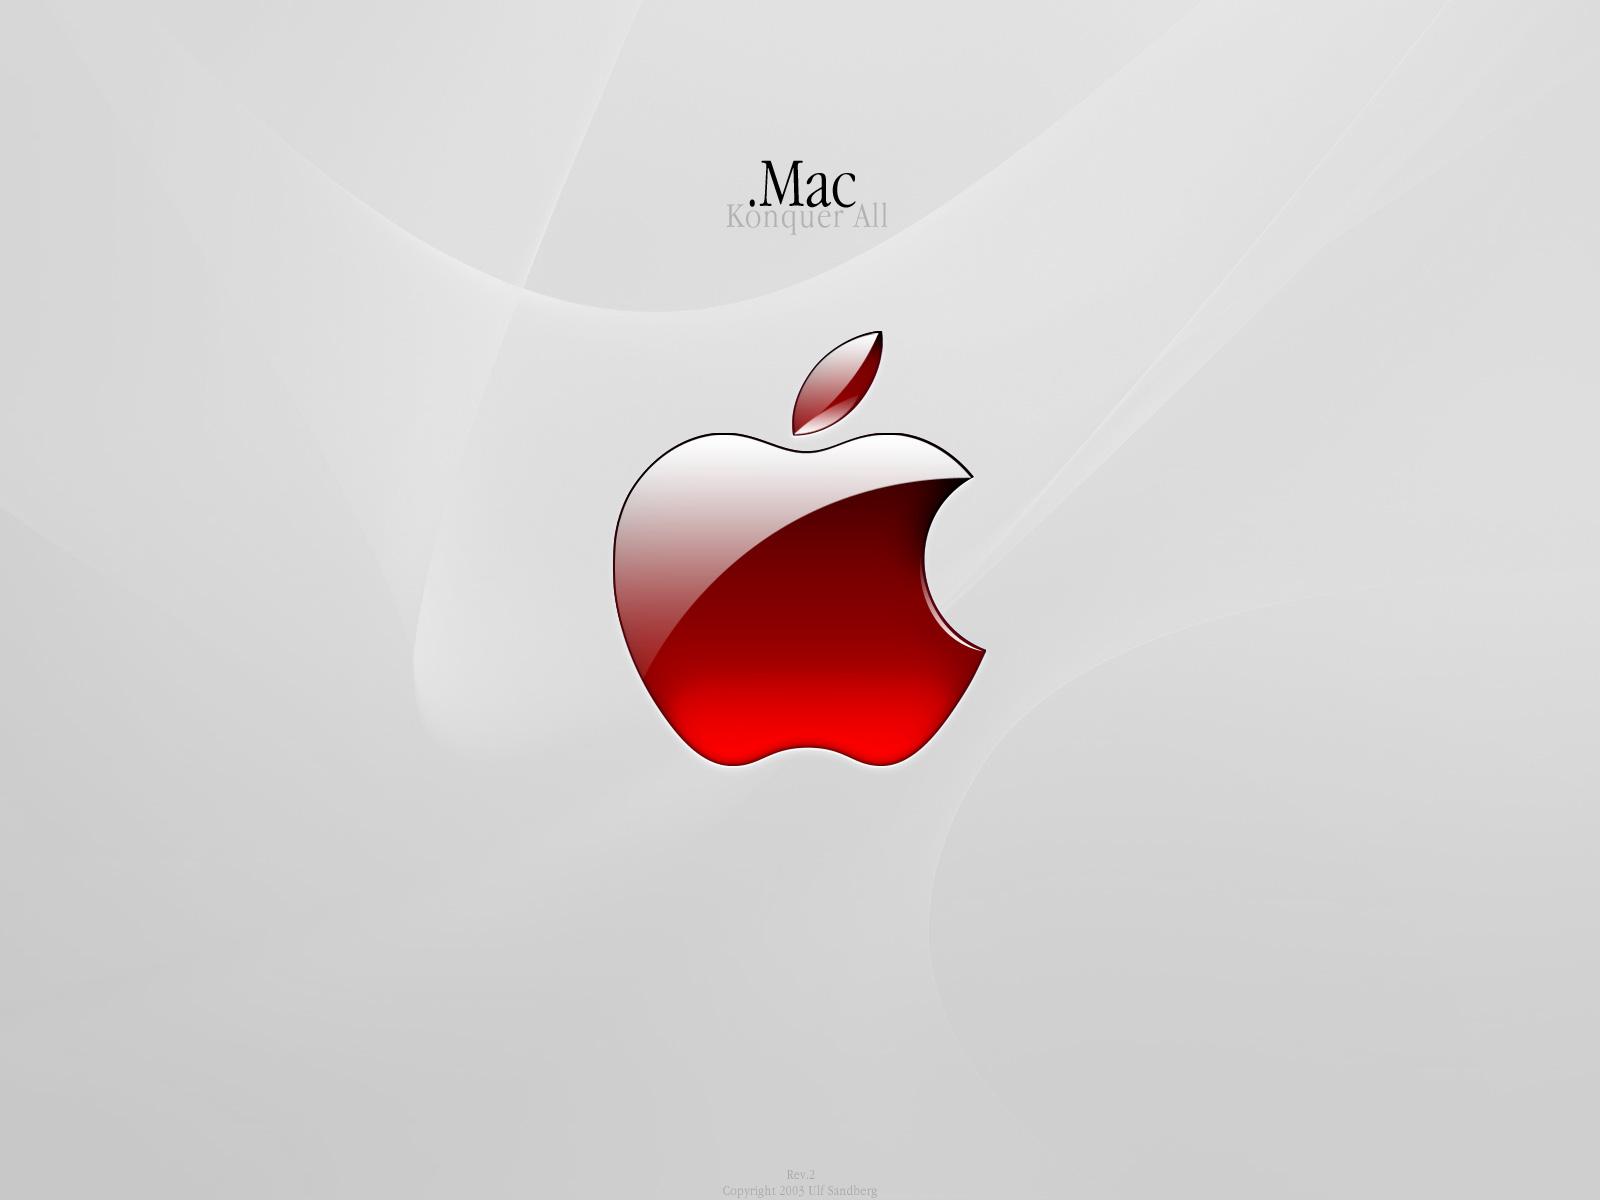 Aaaaaaaacbm Kt6pmaaztls S1600 Apple Mac Puter Wallpaper Jpg